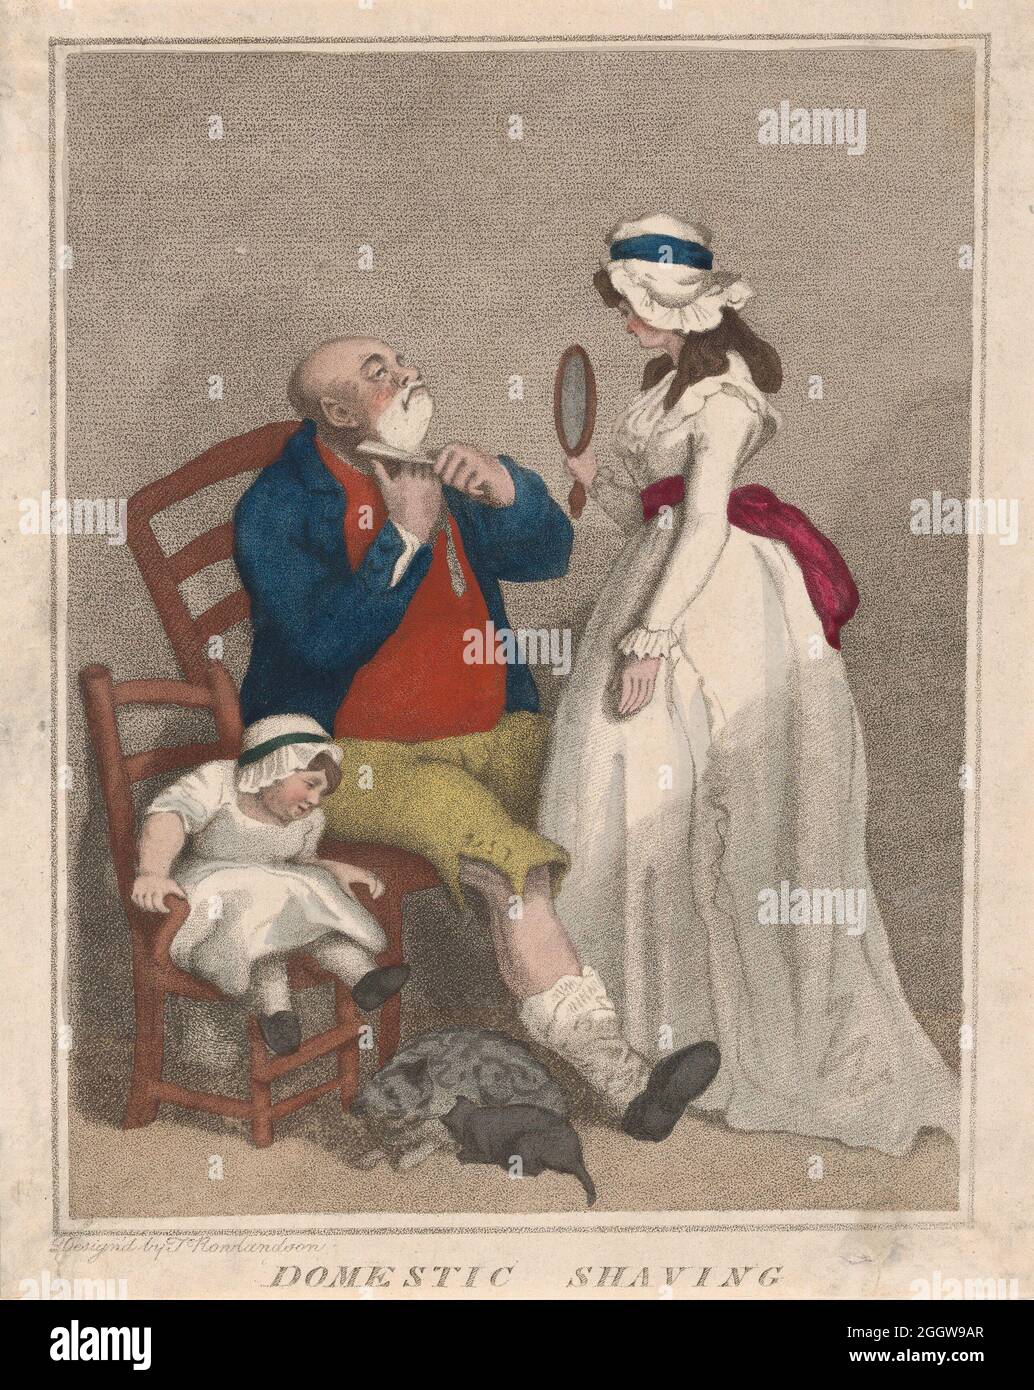 Artiste : Thomas Rowlandson (1756-1827) artiste et caricaturiste anglais de l'ère géorgienne. Observateur social, il était un artiste prolifique et un imprimeur. Crédit : Thomas Rowlandson/Alamy Banque D'Images